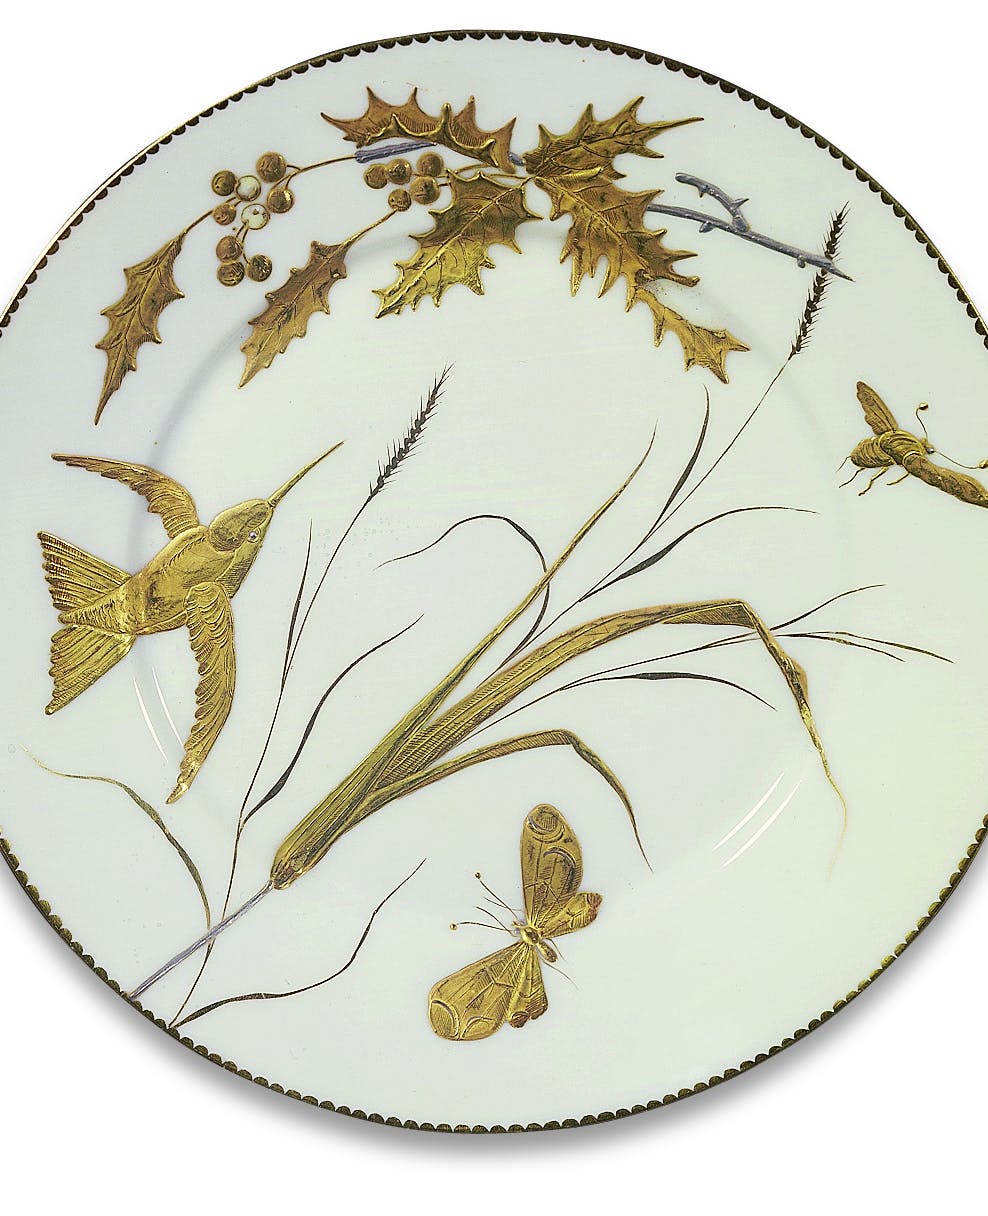 Piatto bianco con decori oro raffiguranti uccelli, insetti e foglie